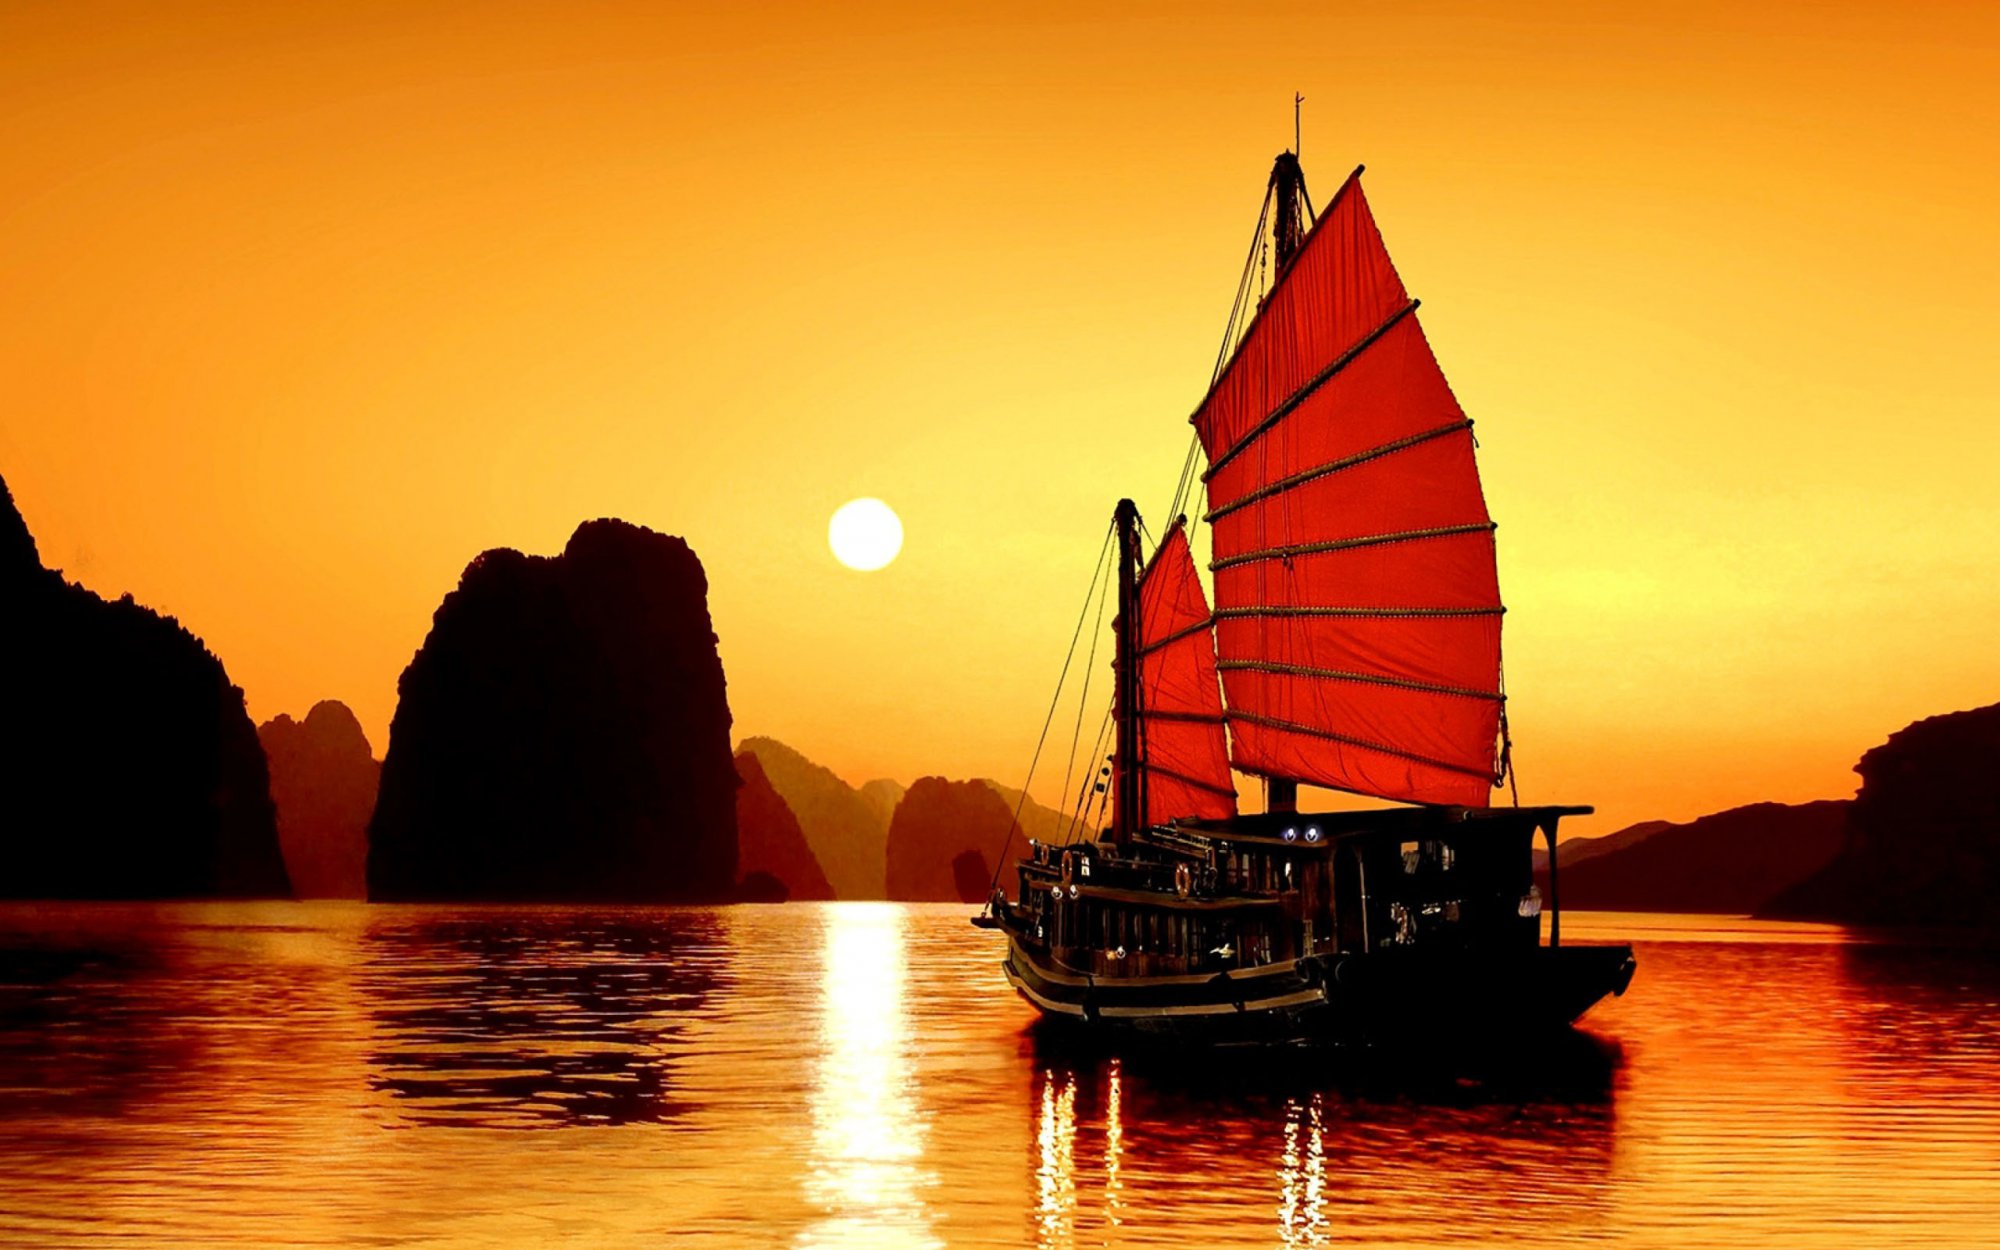 Hình ảnh chiếc thuyển buồn trôi nổi trên biển Hạ Long buổi hoàng hôn.